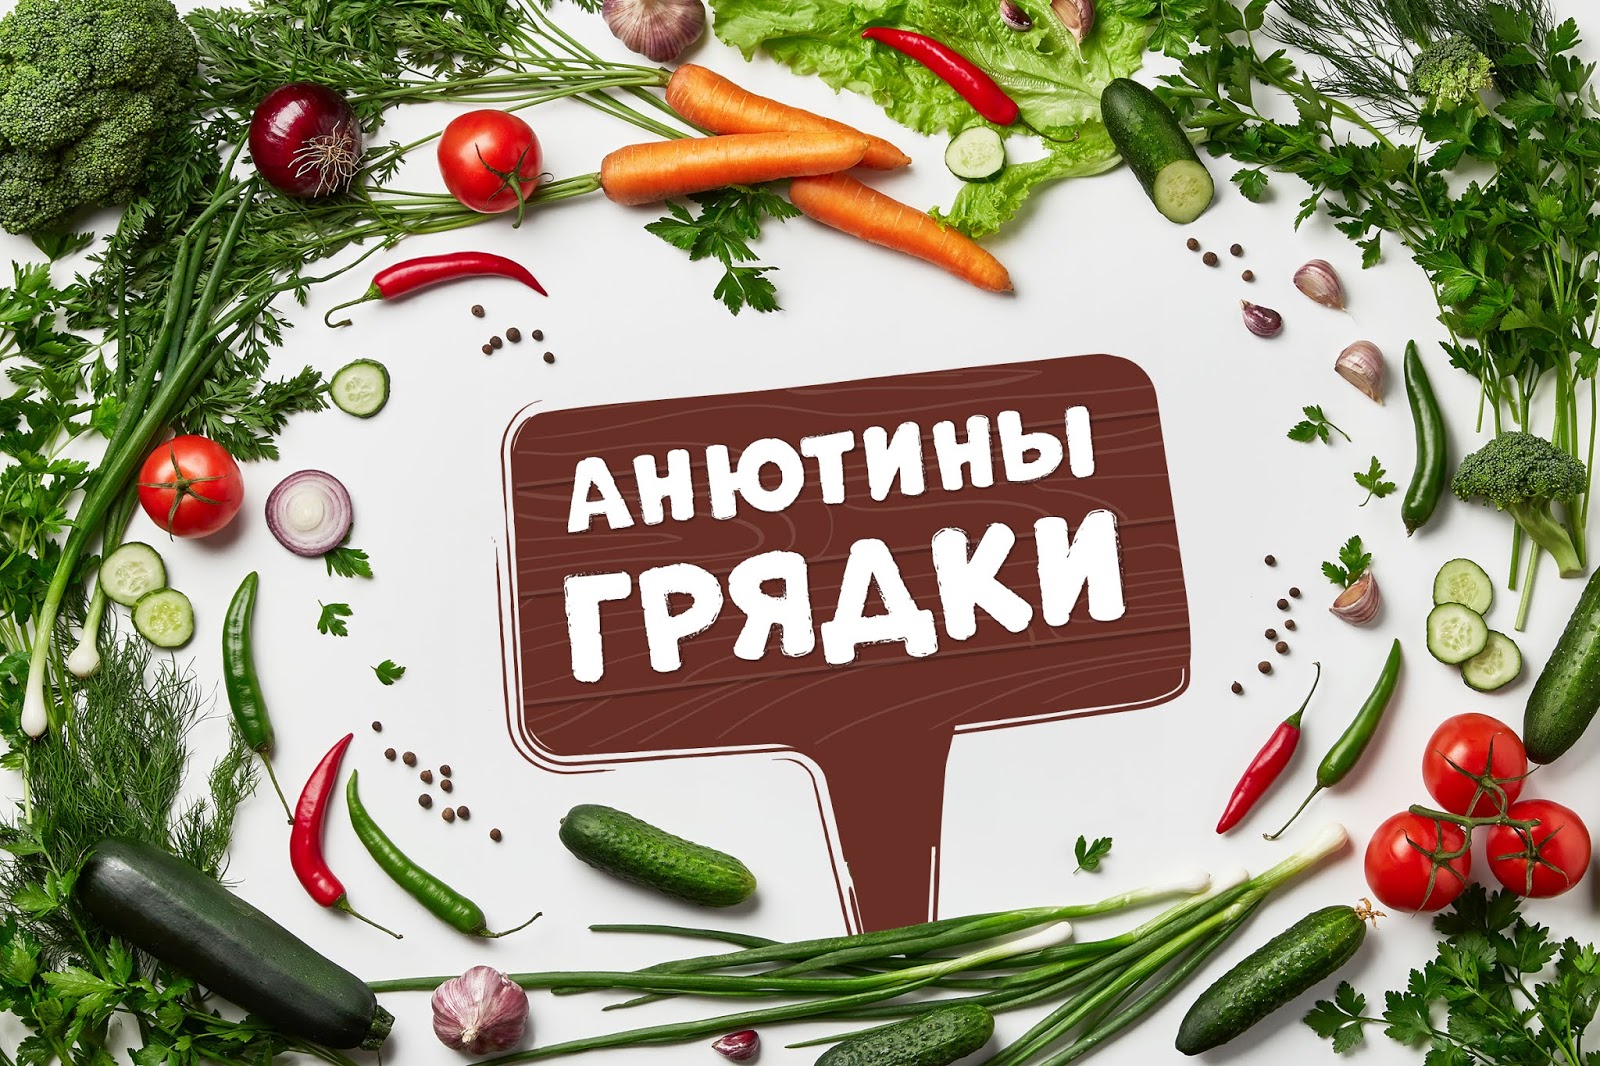 有机蔬菜西安oe欧亿体育app官方下载
品牌包装设计